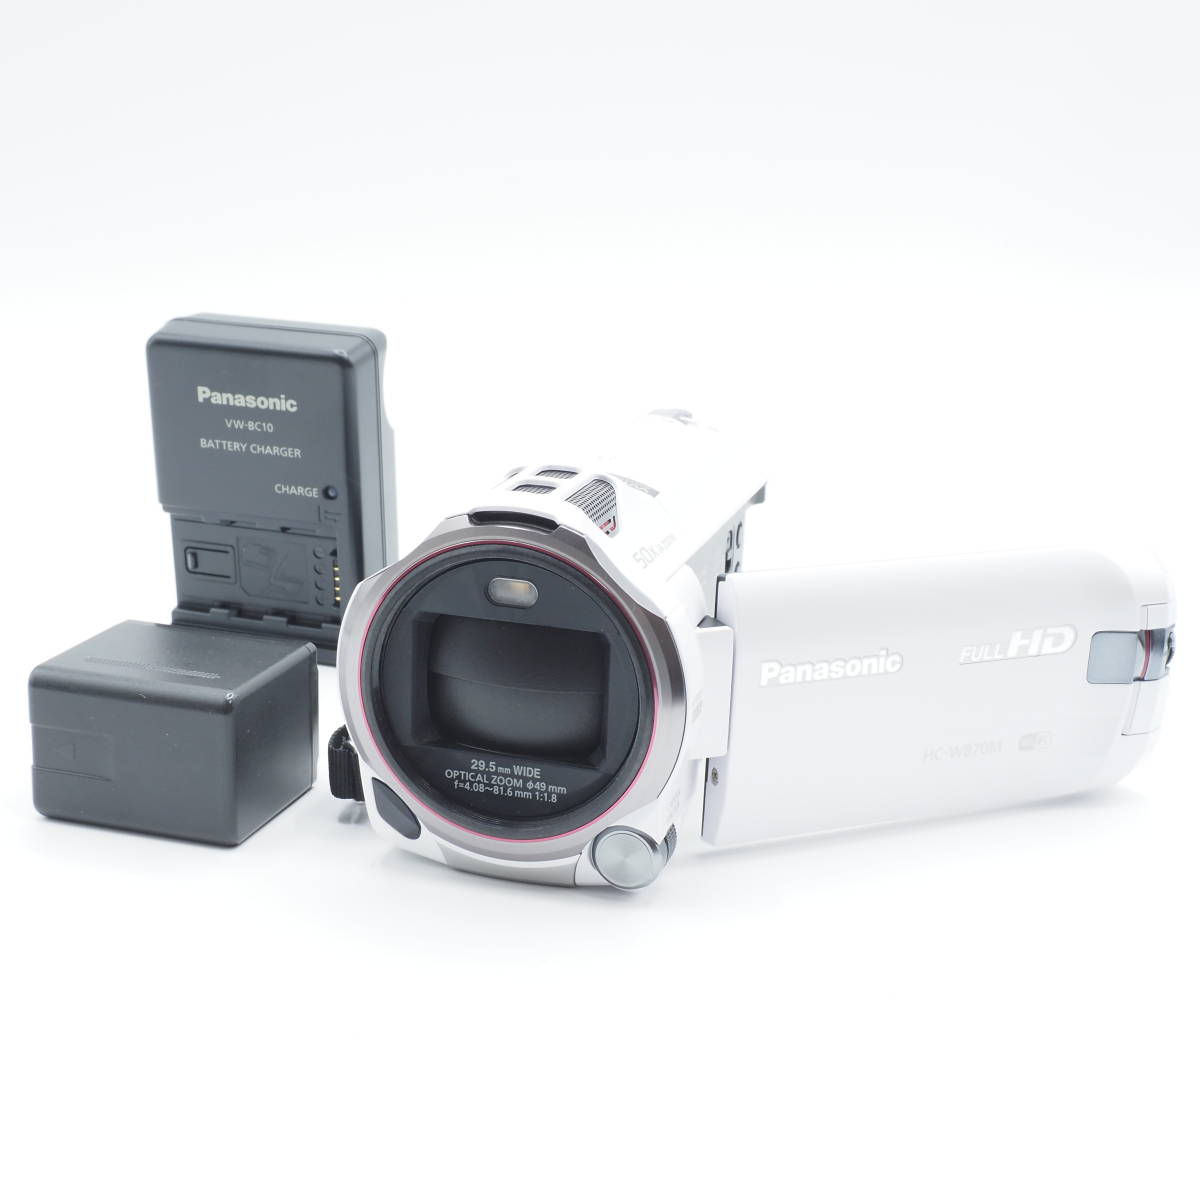 ★新品級★ Panasonic パナソニック HDビデオカメラ W870M ホワイト HC-W870M-W #1818